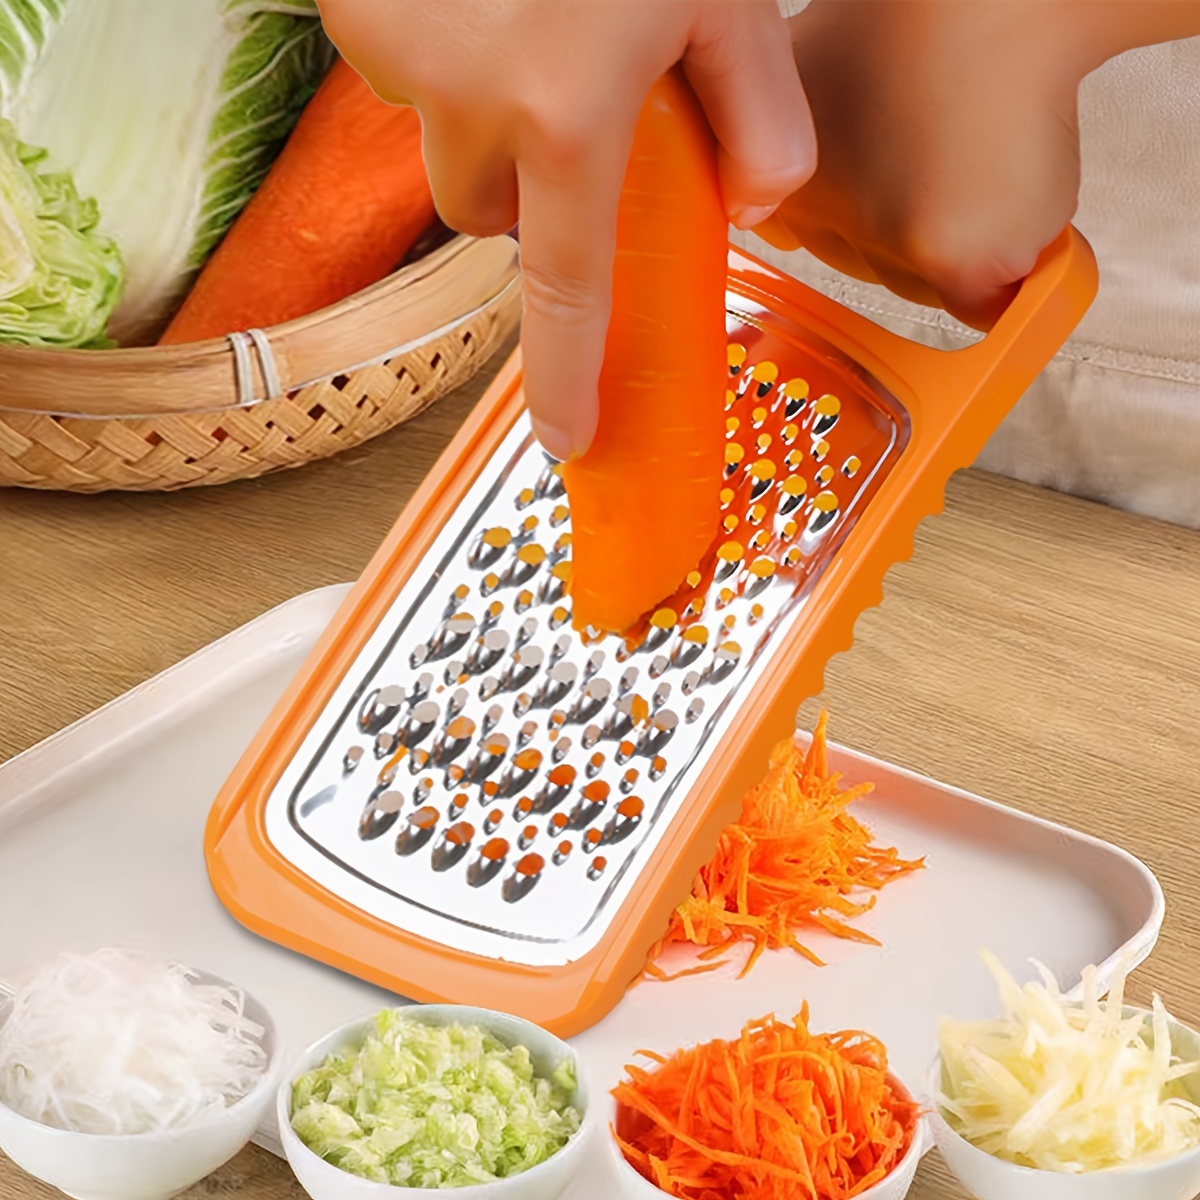 1pc Multifunctional Potato/carrot Shredder & Grater Kitchen Tool